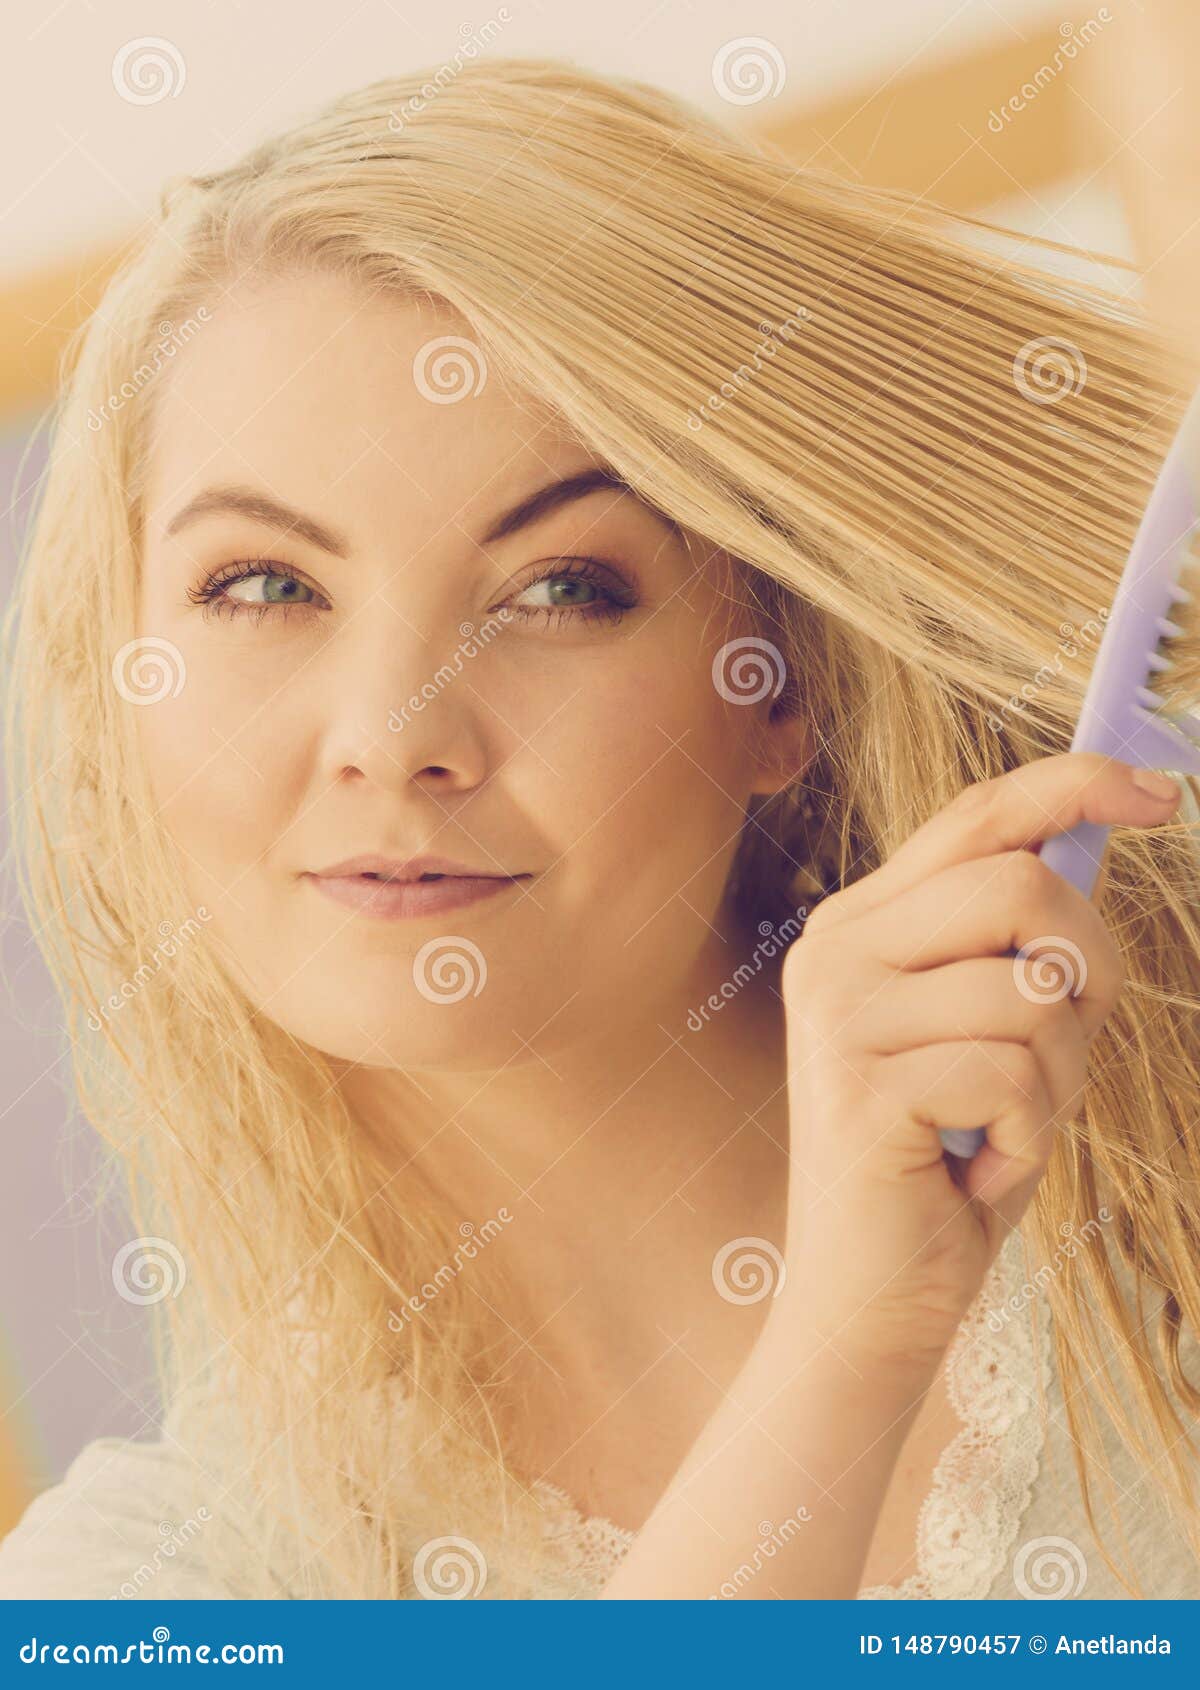 Woman Brushing Her